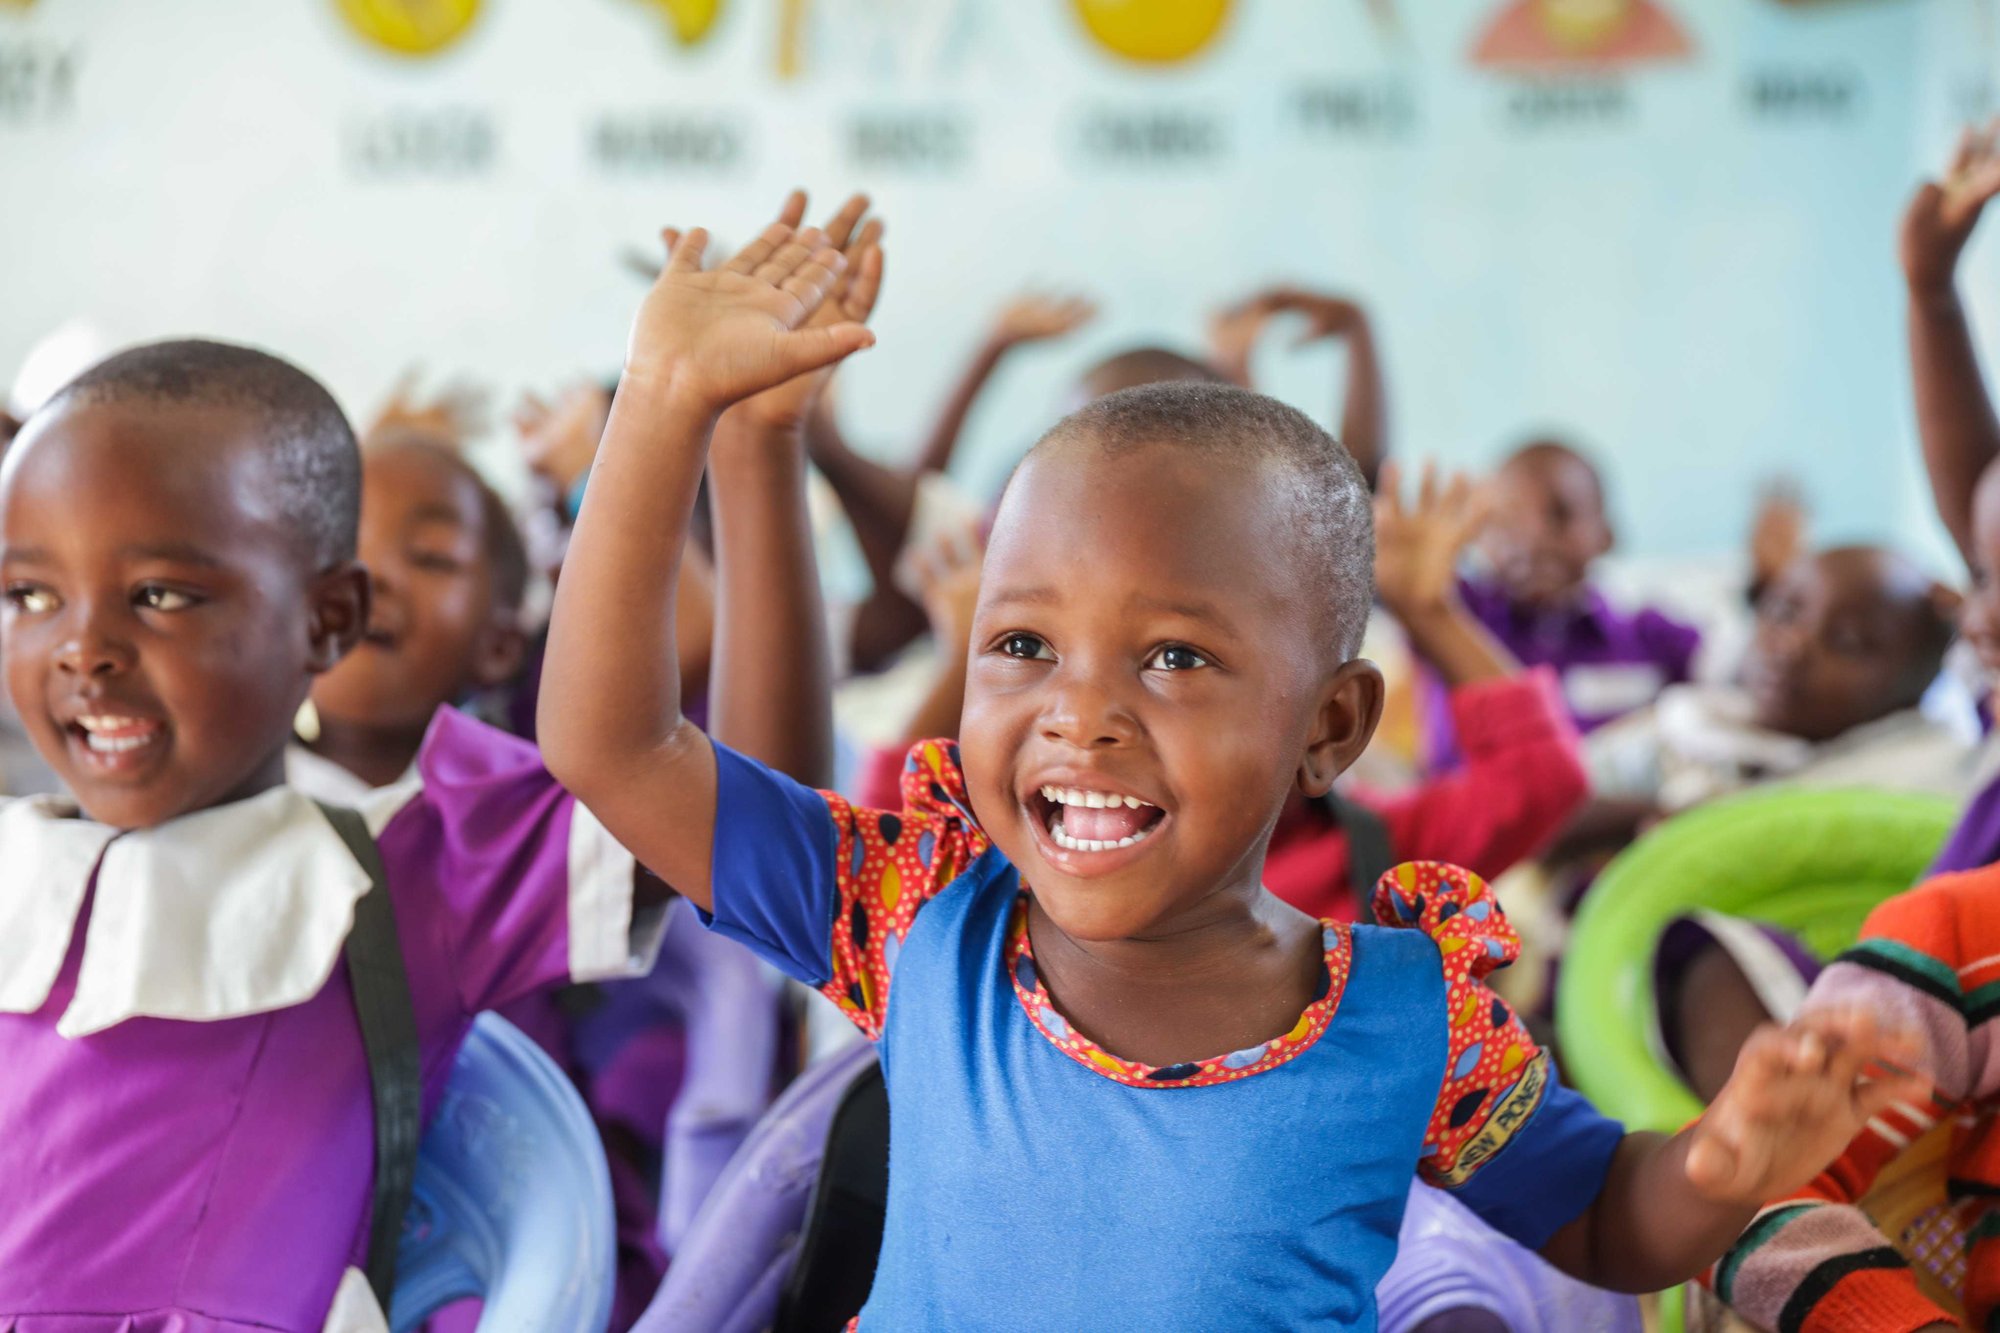 Jonge kinderen in Tanzania steken hun hand op in de klas.